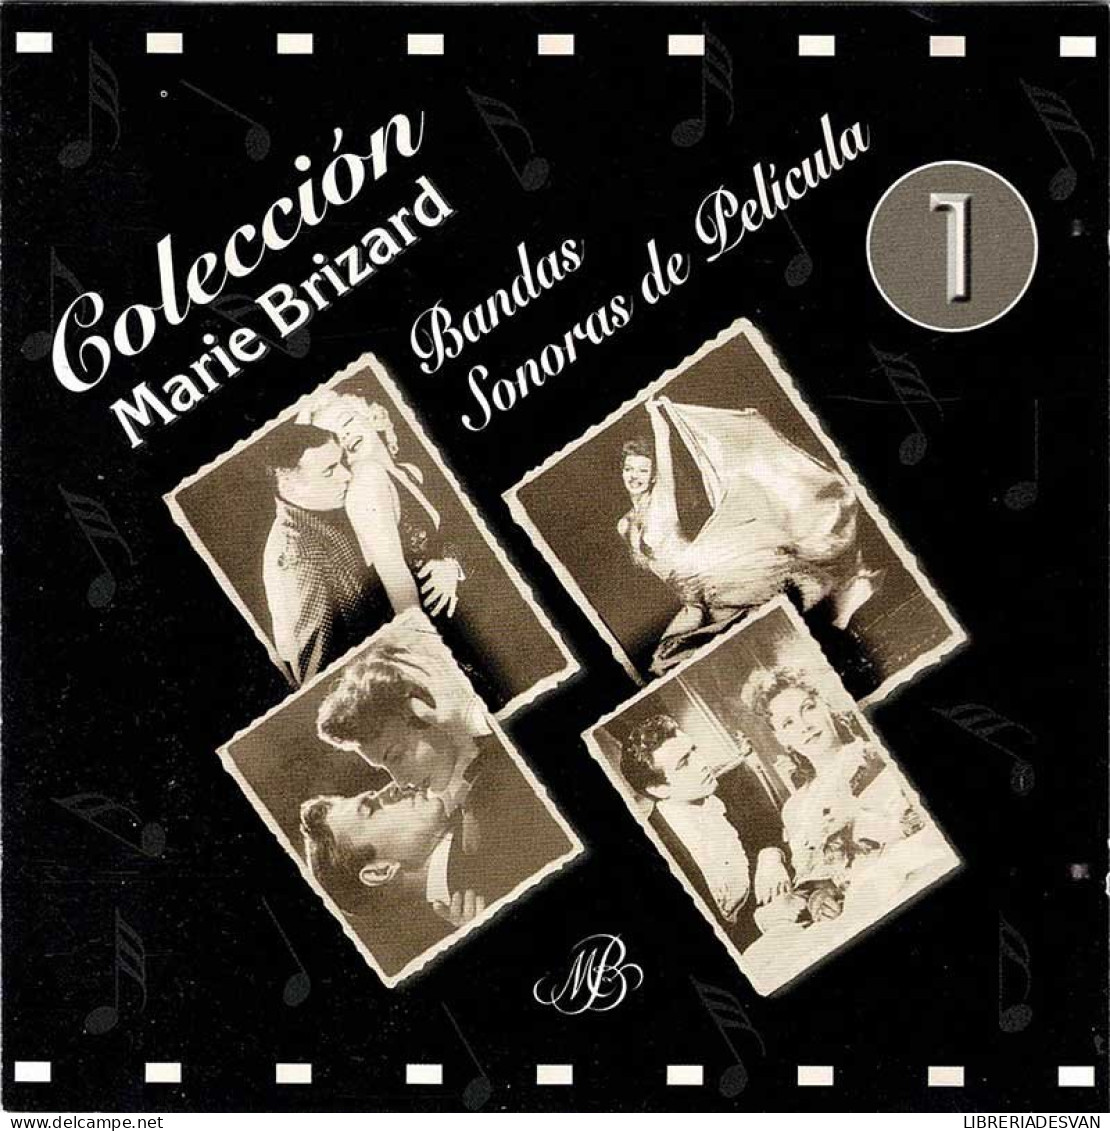 Colección Marie Brizard. Bandas Sonoras De Película Vol. 1. CD - Musique De Films